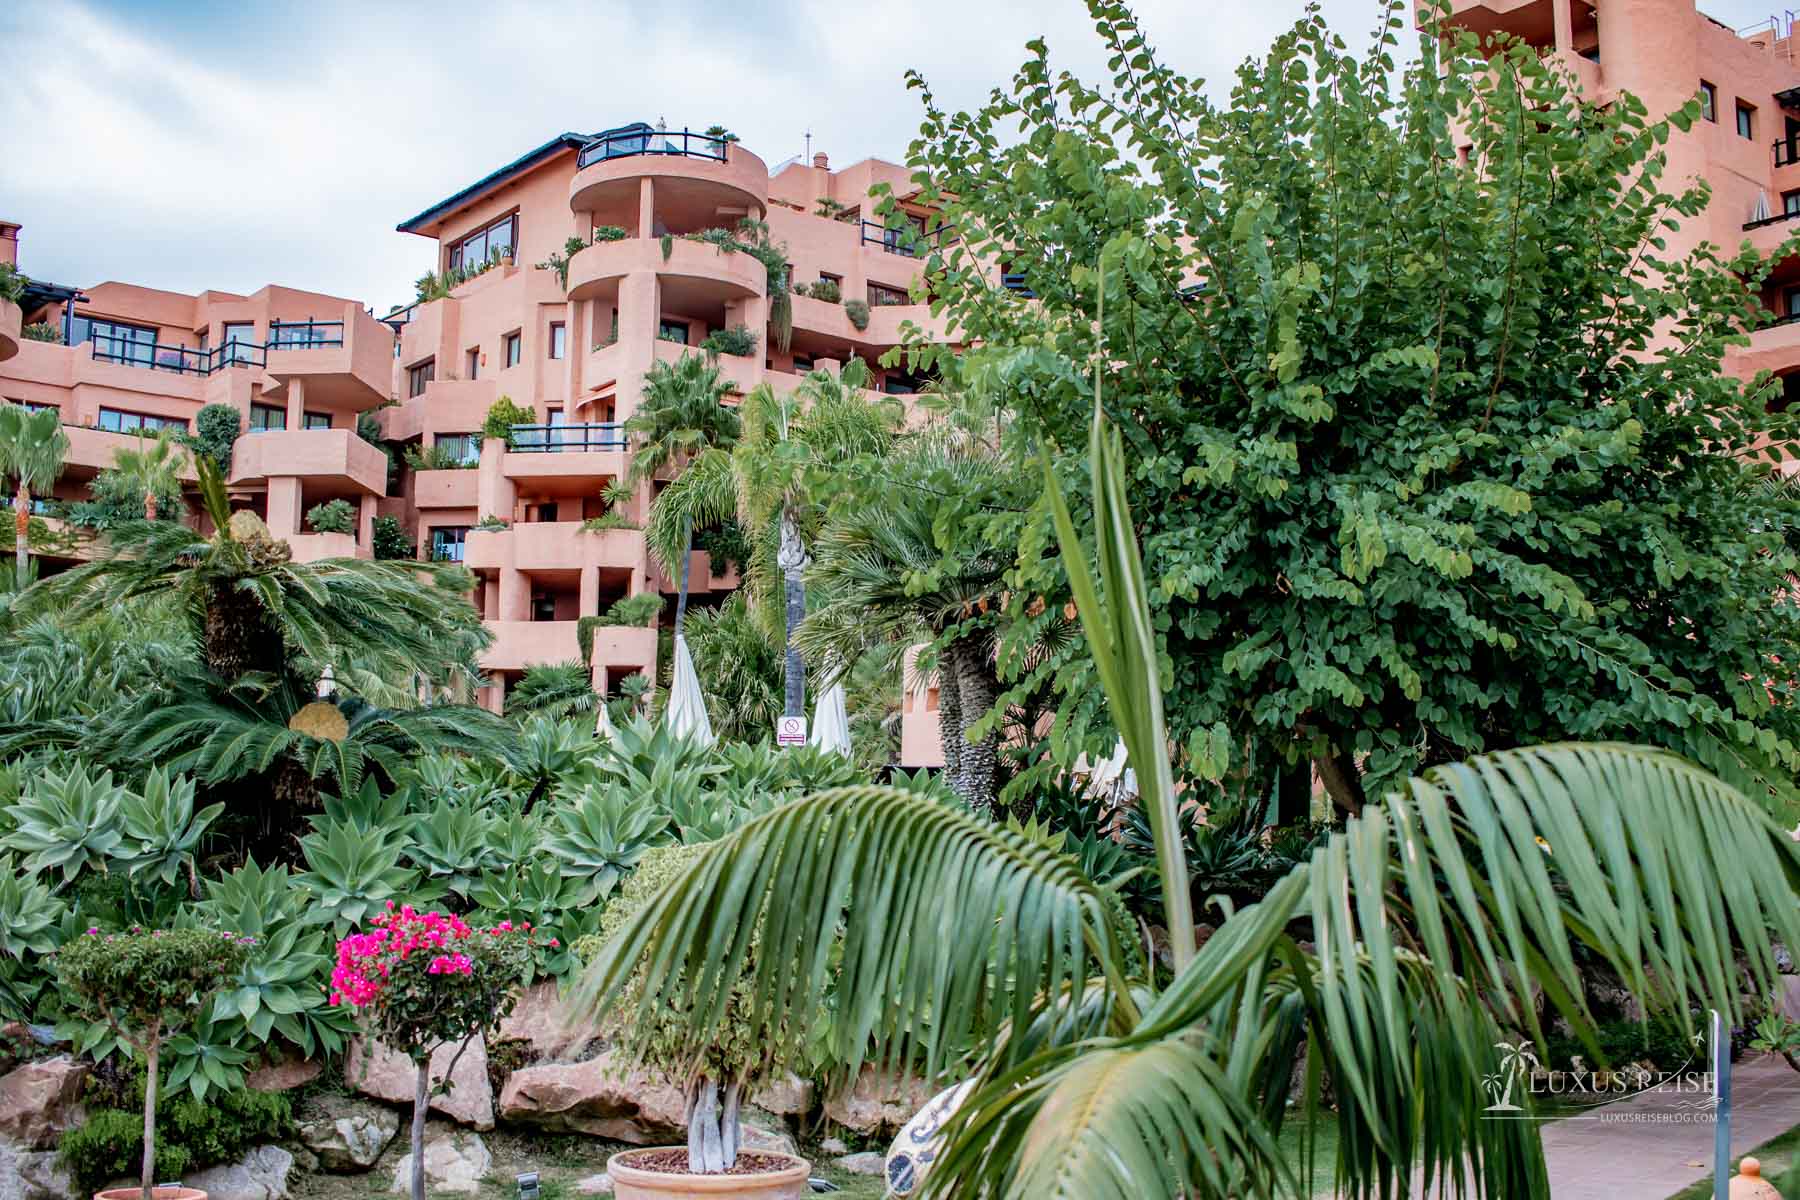 Kempinski Hotel Bahía Estepona Andalusien Spanien - Hoteltour und Hoteleindruck - Luxuriöses 5-Sterne Hotel am Mittelmeer - Aussicht auf das Mittelmeer